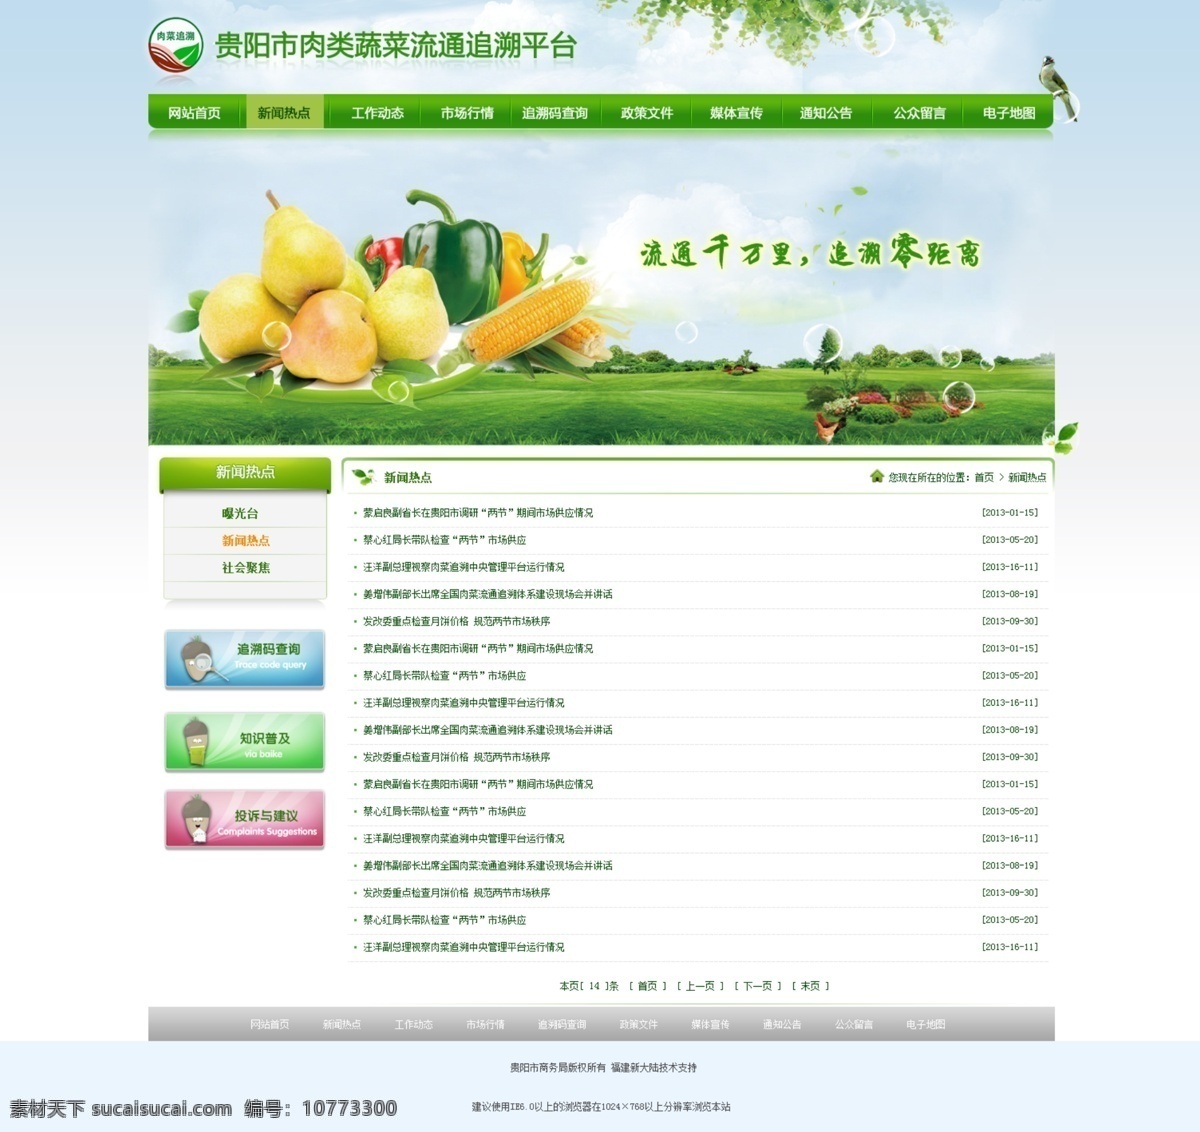 绿色食品 绿色 肉类 食品 蔬菜 网页模板 源文件 中文模板 追溯 风景 生活 旅游餐饮